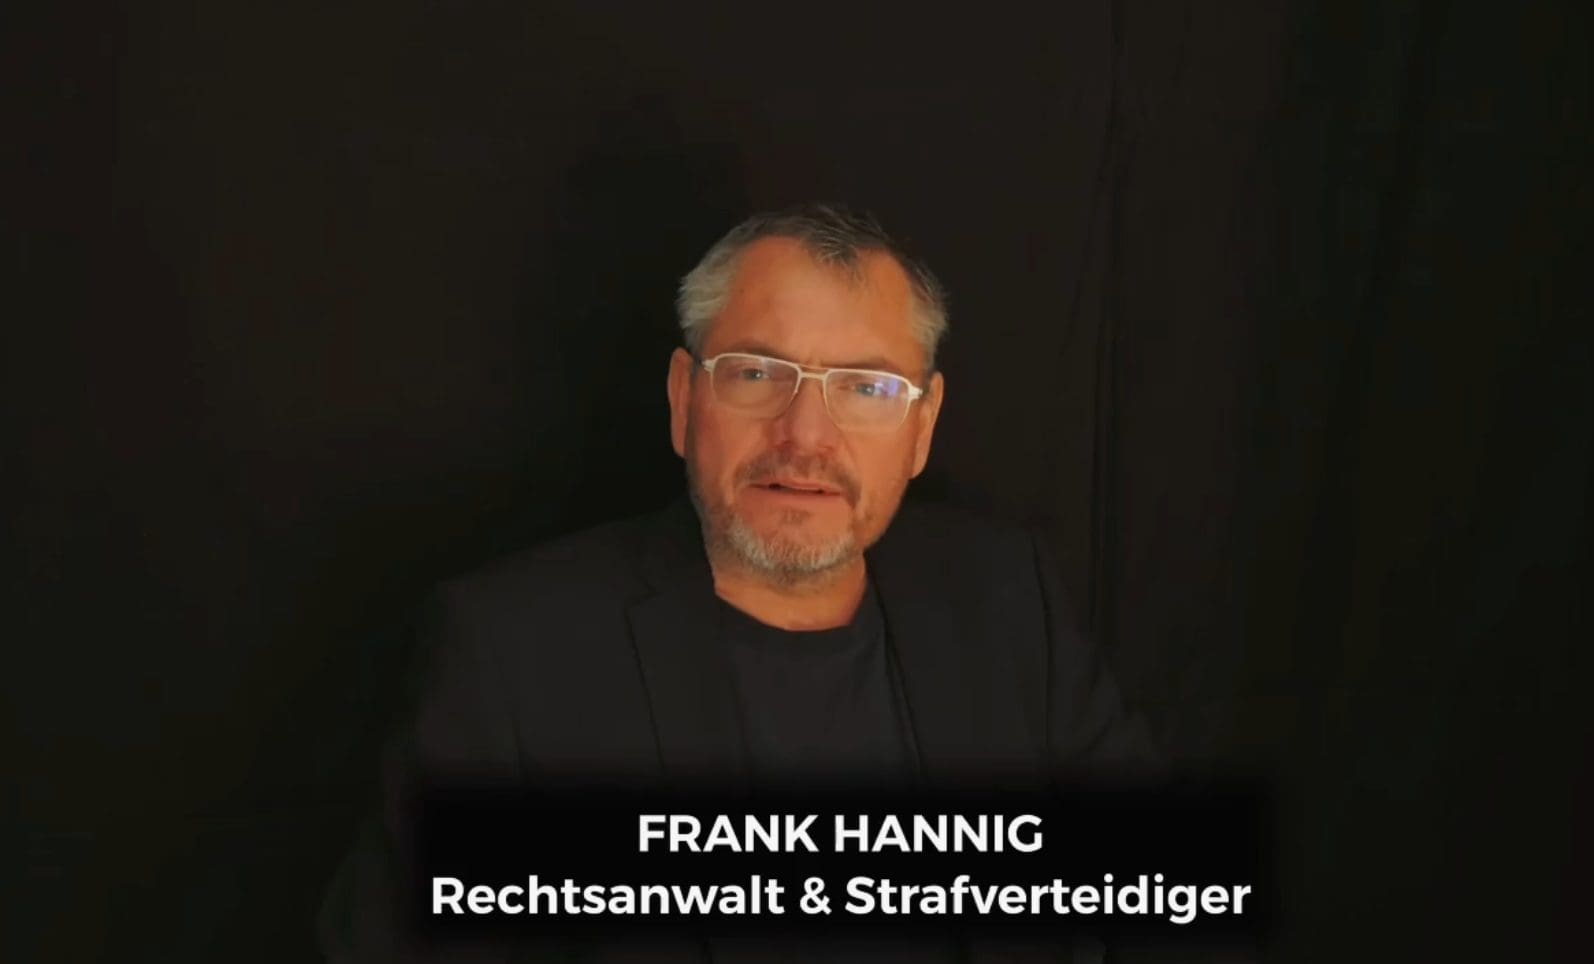 frank-hannig-ist-rechtsanwalt-–-in-einem-video-auf-instagram-sagt-er:-„wir-koennen-ja-dumme-waehlen“